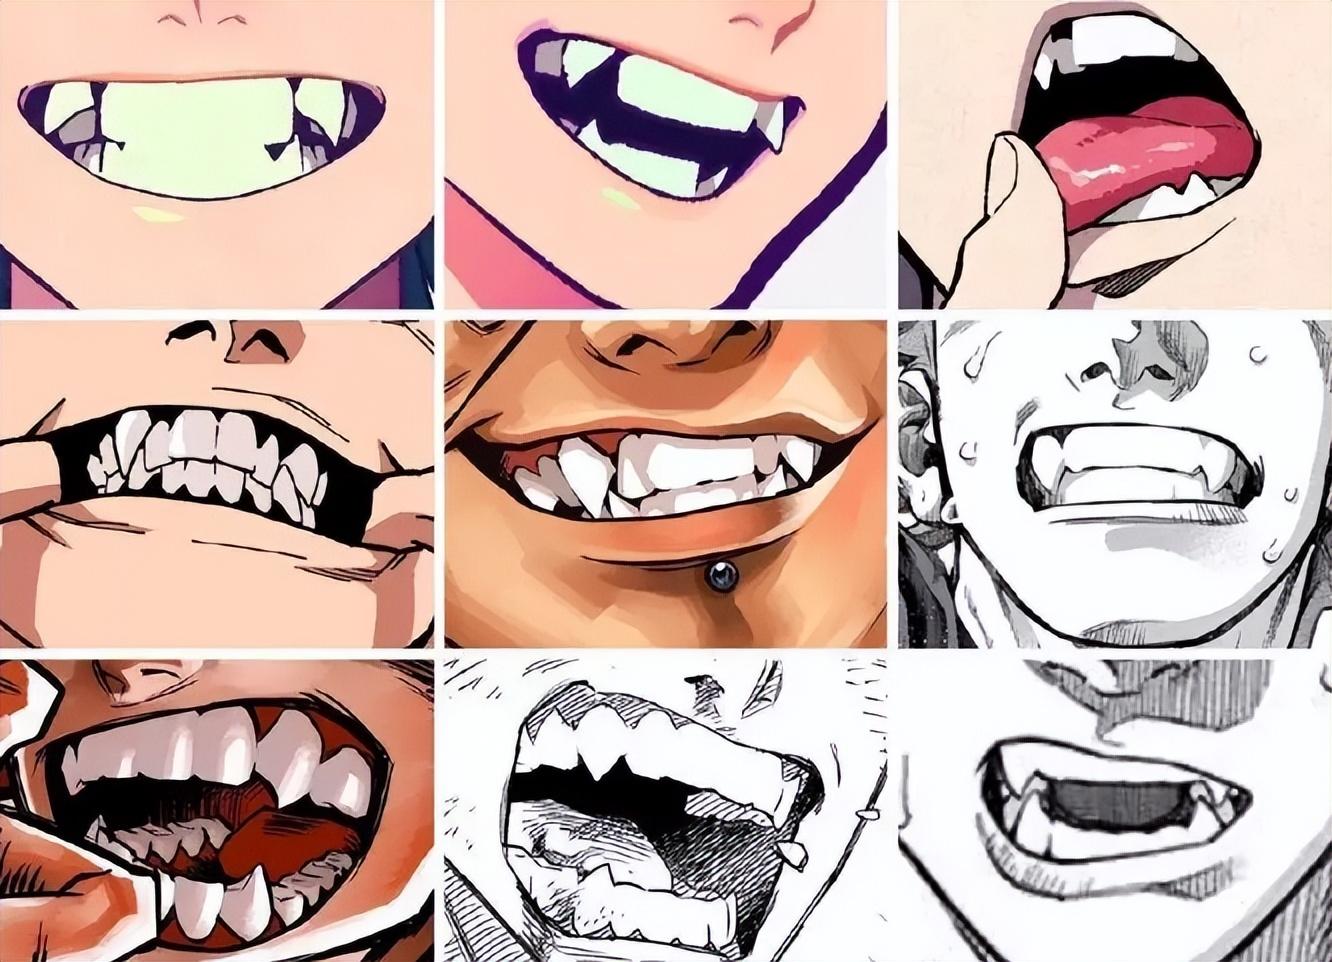 รูปฟันผุในช่องปากการ์ตูน PNG , การ์ตูน, ช่องปาก, ฟันภาพ PNG และ PSD ...